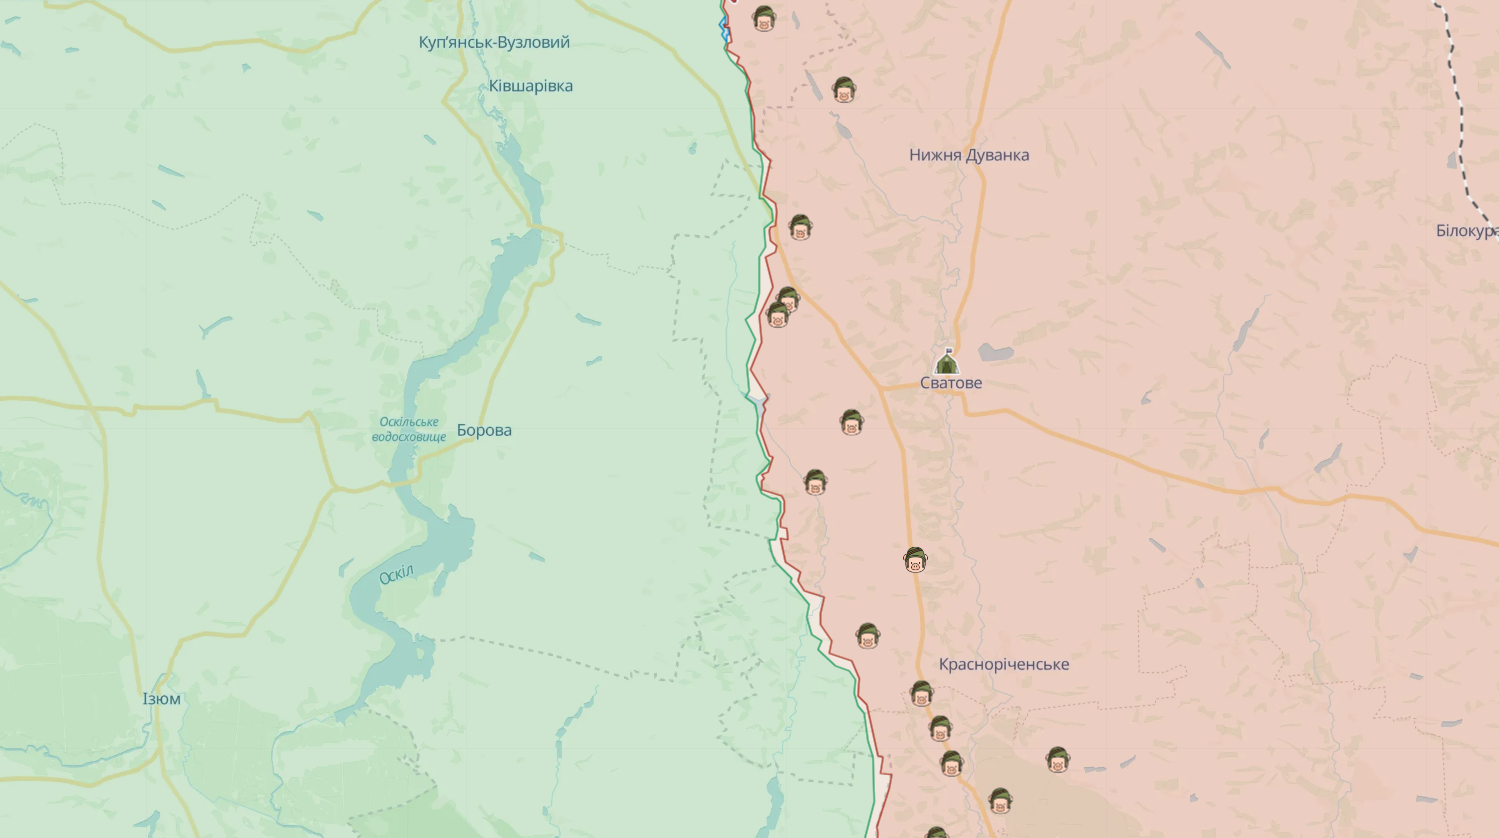 Ukraińska straż graniczna weszła głęboko w obronę wroga i zajęła pozycje wysunięte na kierunku Swatowo. Wideo